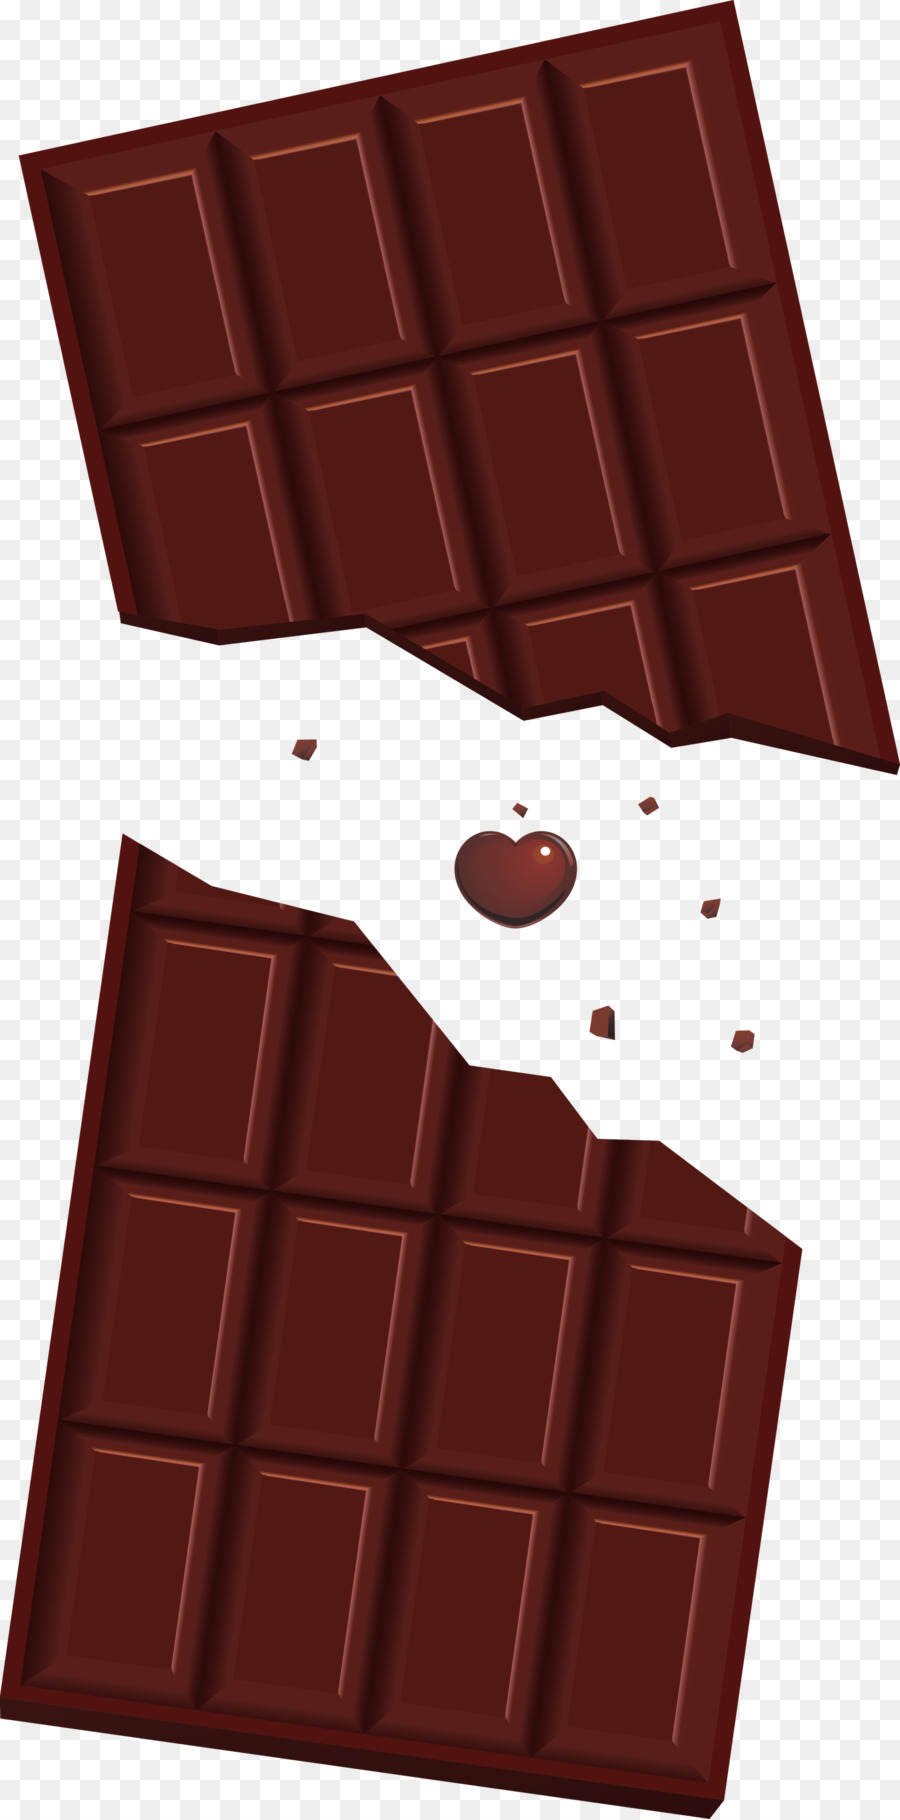 la barretta di cioccolato di kawaii ha aperto la barretta di cioccolato da scartare - 